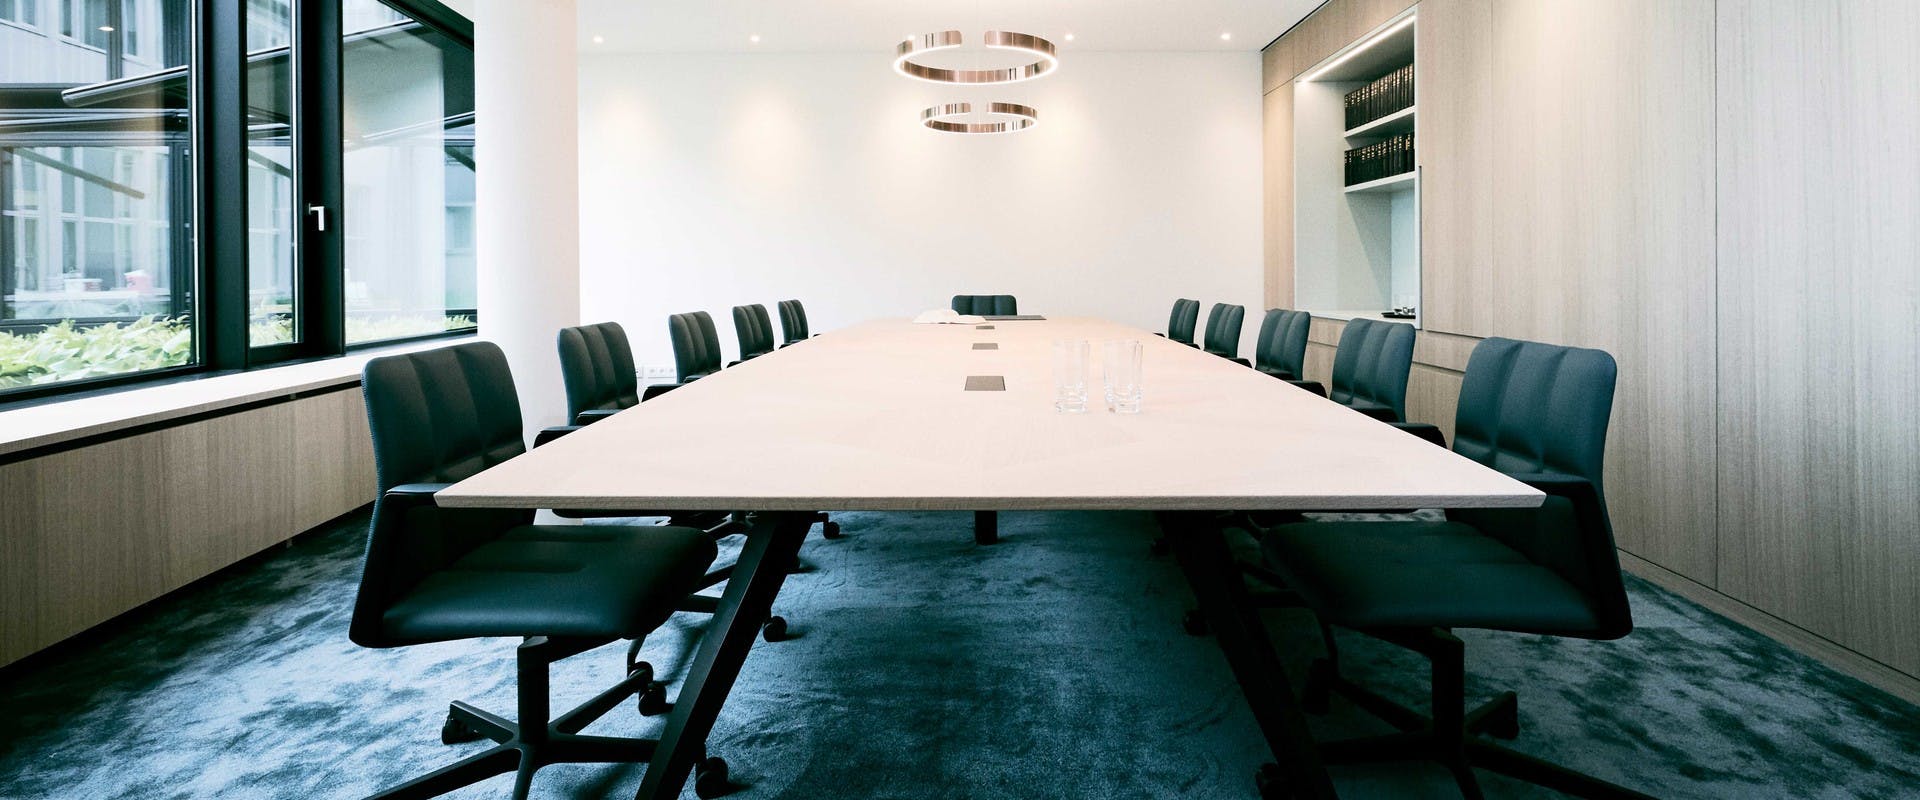 Bild zeigt einen großzügigen Konferenztisch in einem modernen Raum